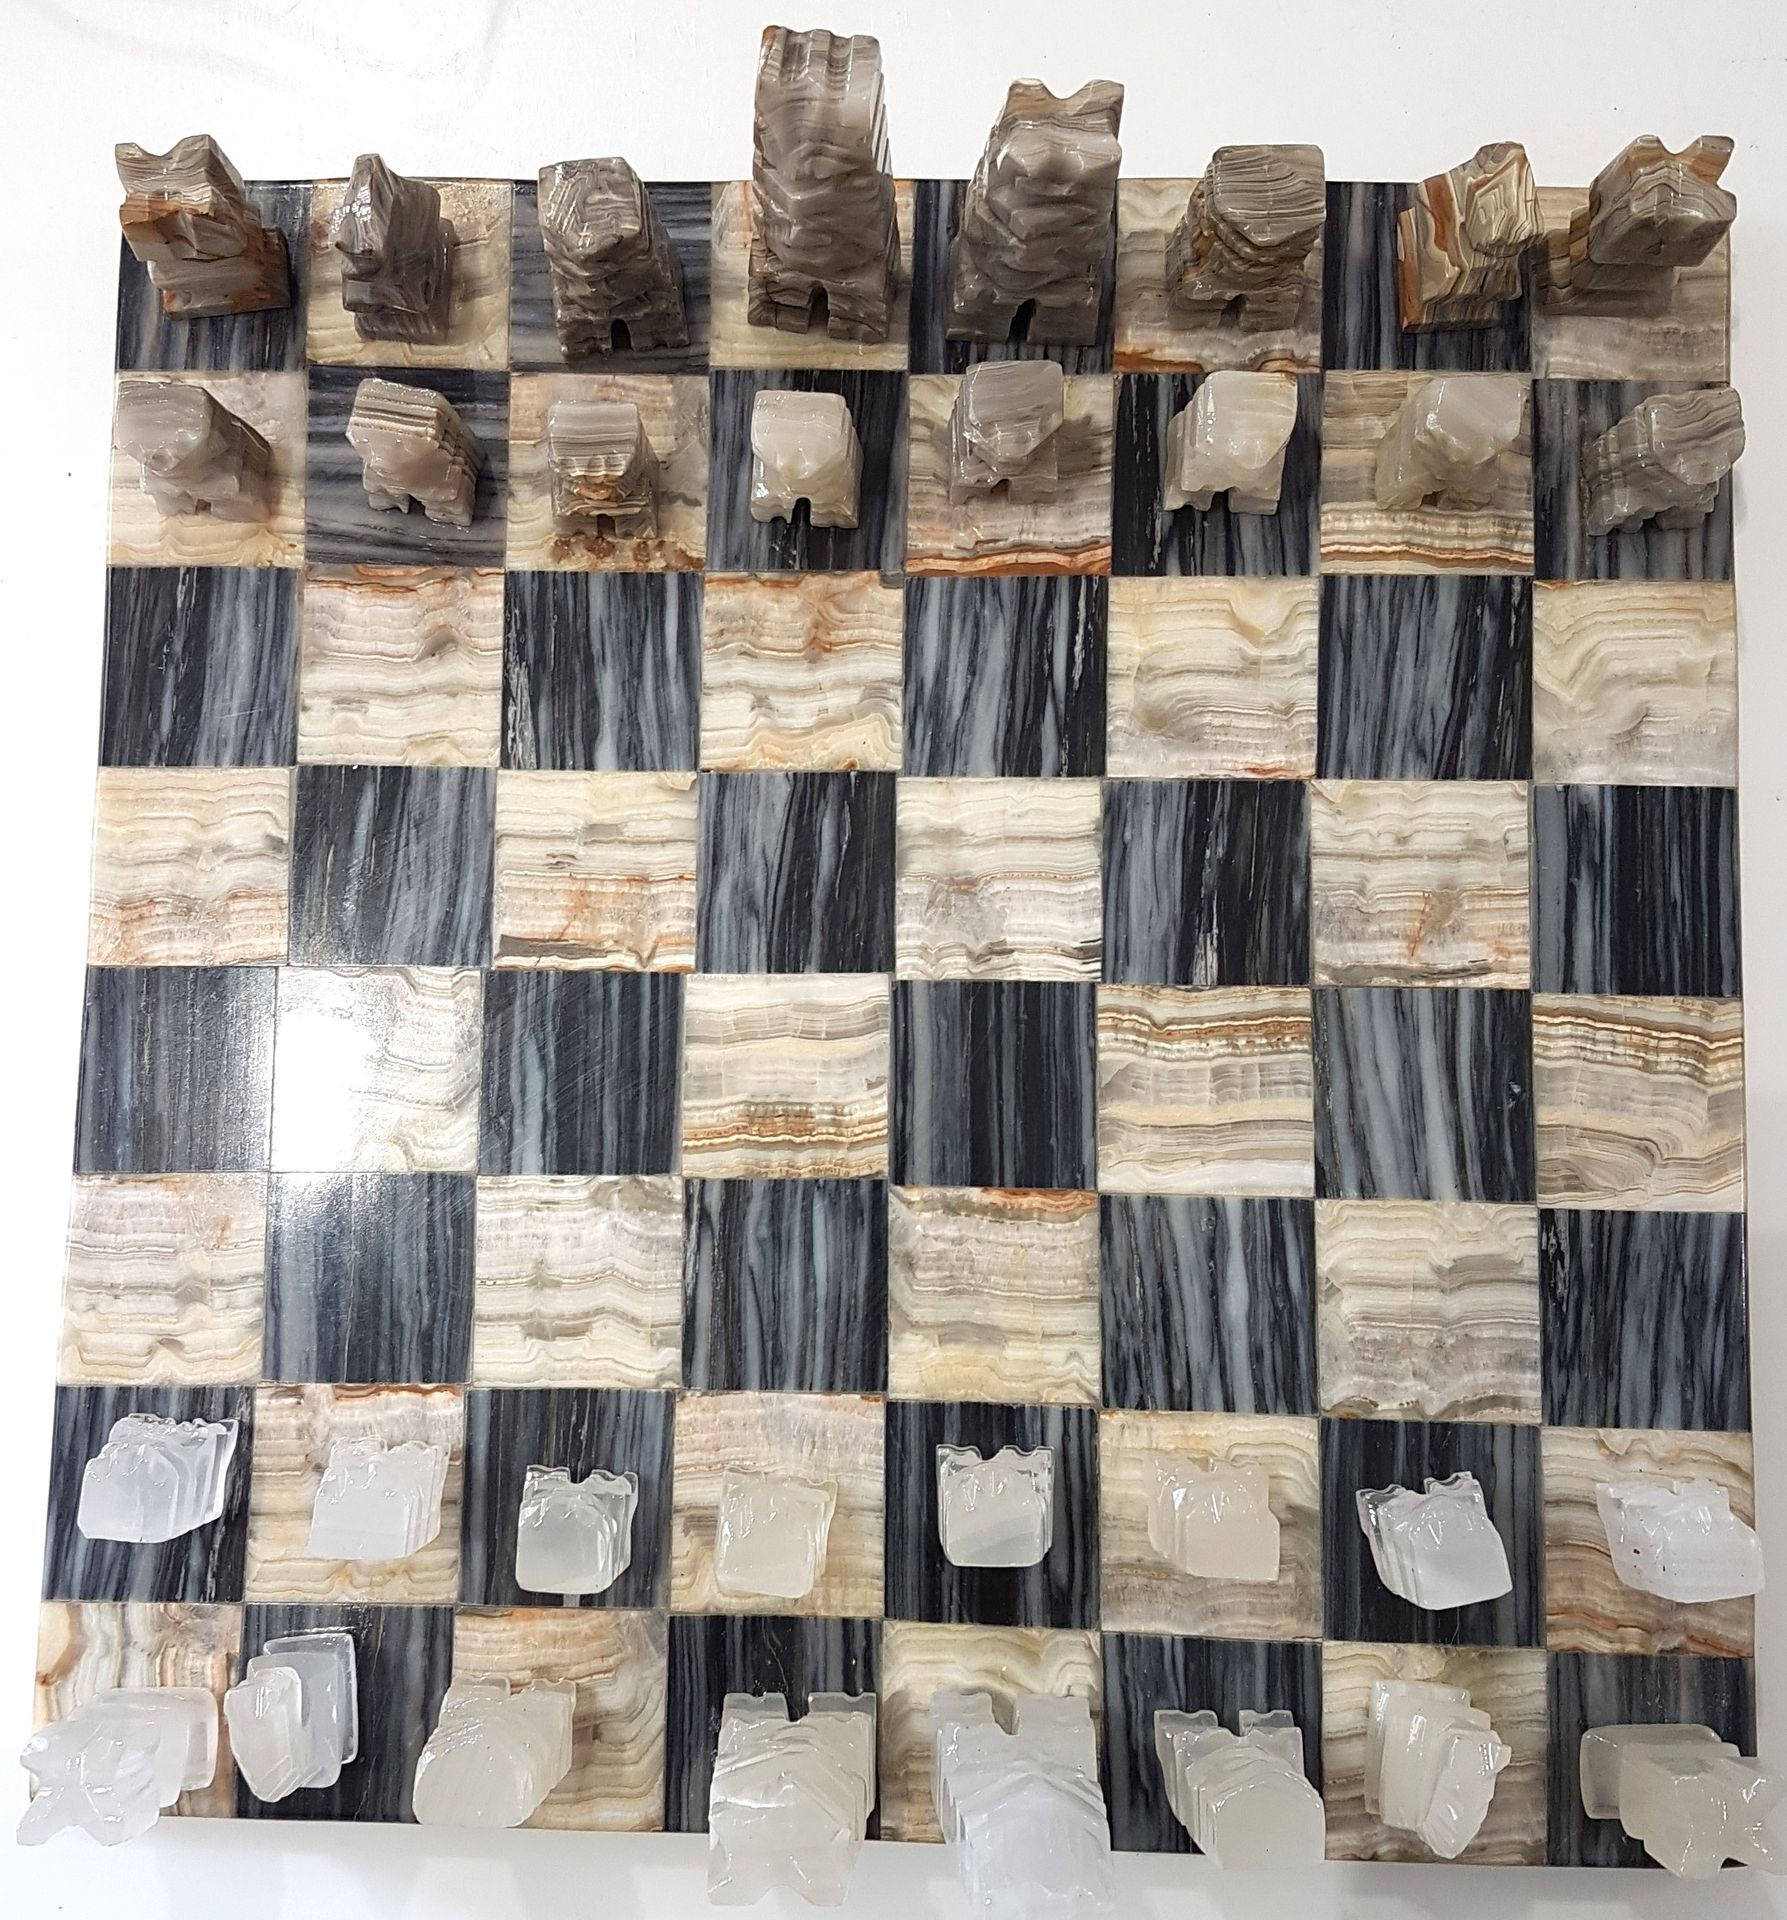 Null Schachspiel aus harten Steinen
Spielbrett: 27 x 27 cm